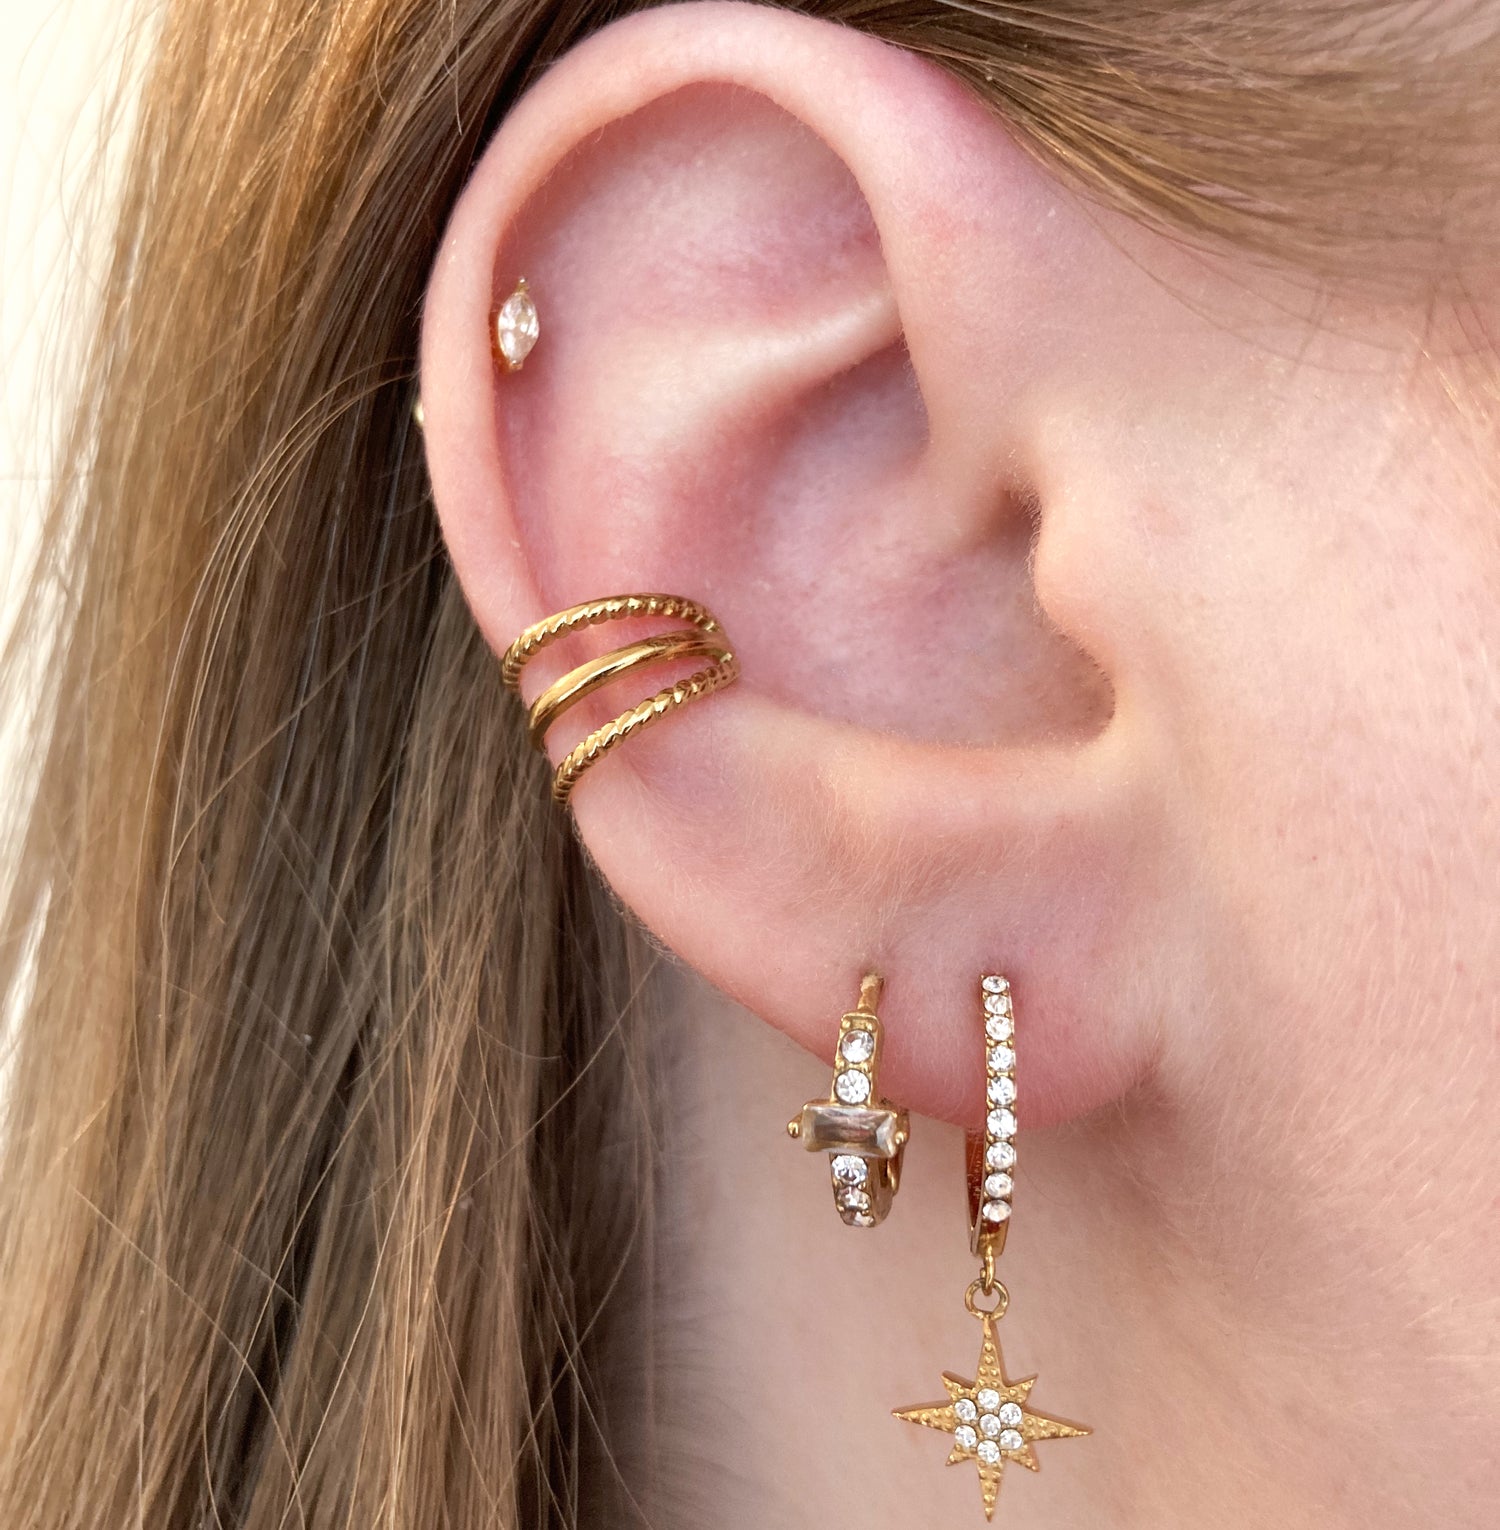 composition boucles d'oreilles avec piercing elena, earcuff triple georgia, boucles d'oreilles tia et maeve en acier inoxydable